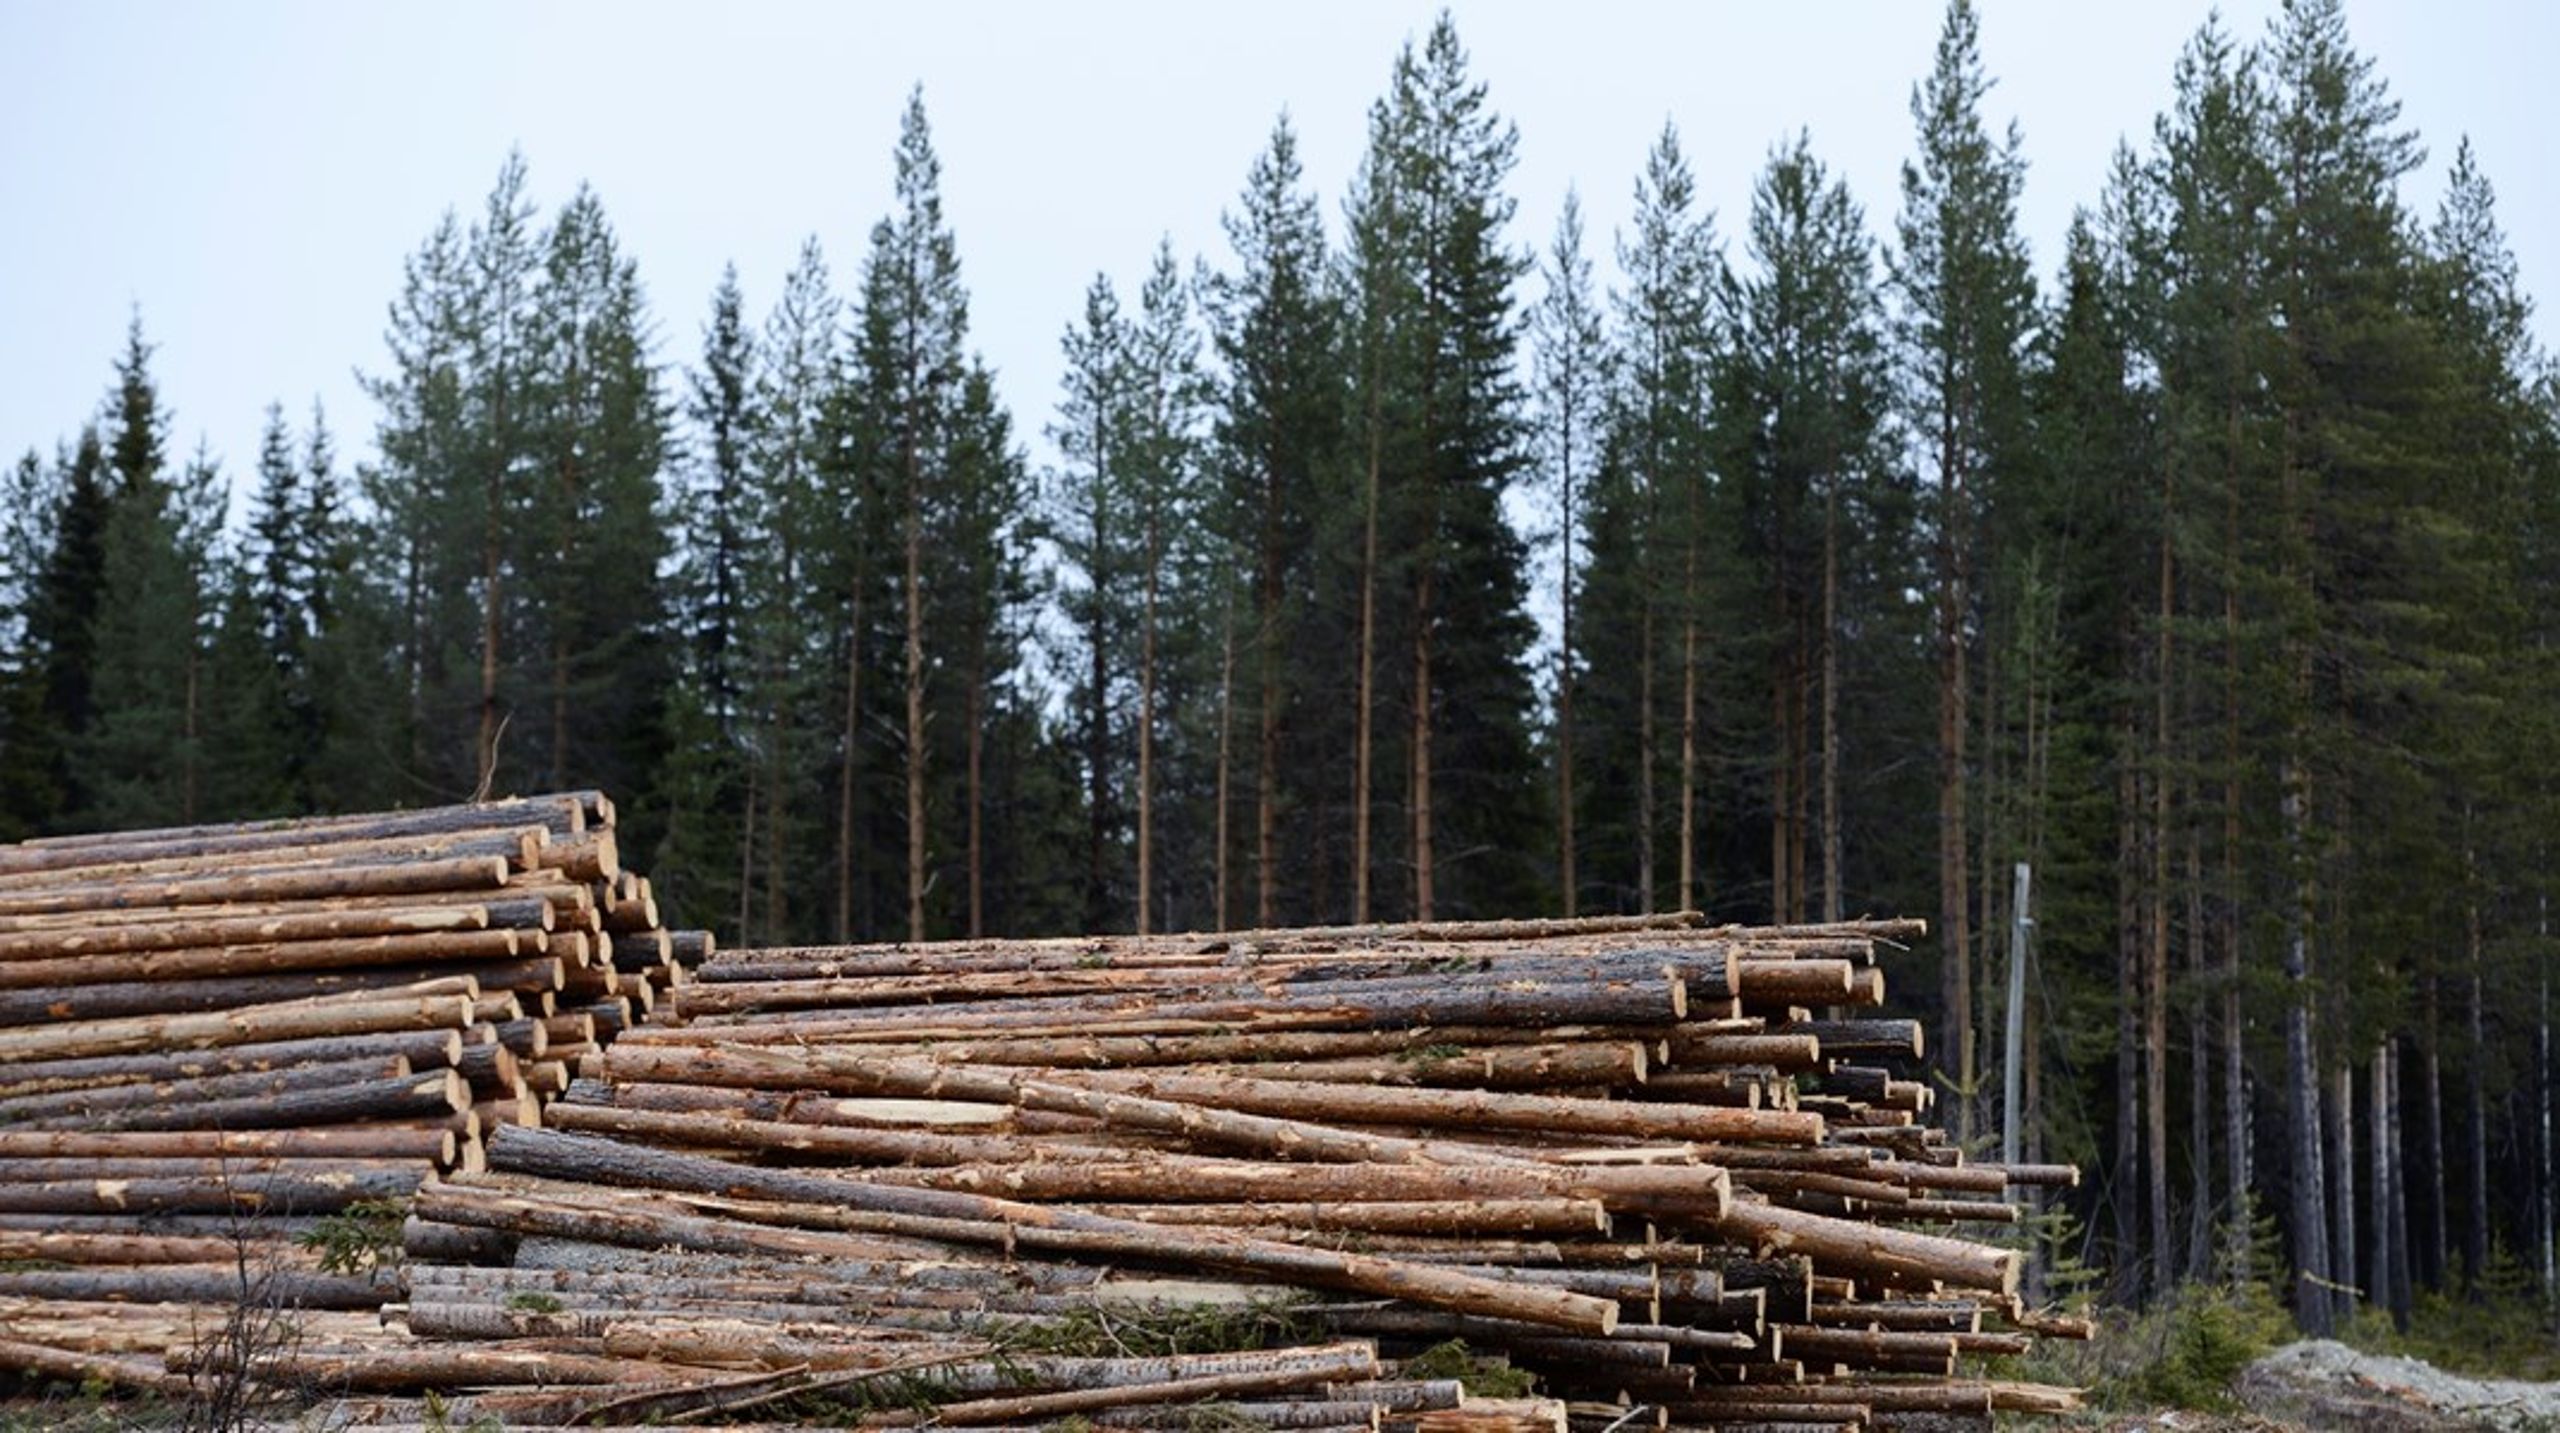 LRF:s undersökning visar att åtta av tio skogsägare är positiva till att själva ta initiativ till att skydda höga naturvärden i skogen ifall en ny skyddsmodell baserad på frivillighet skulle gälla, skriver debattörerna.